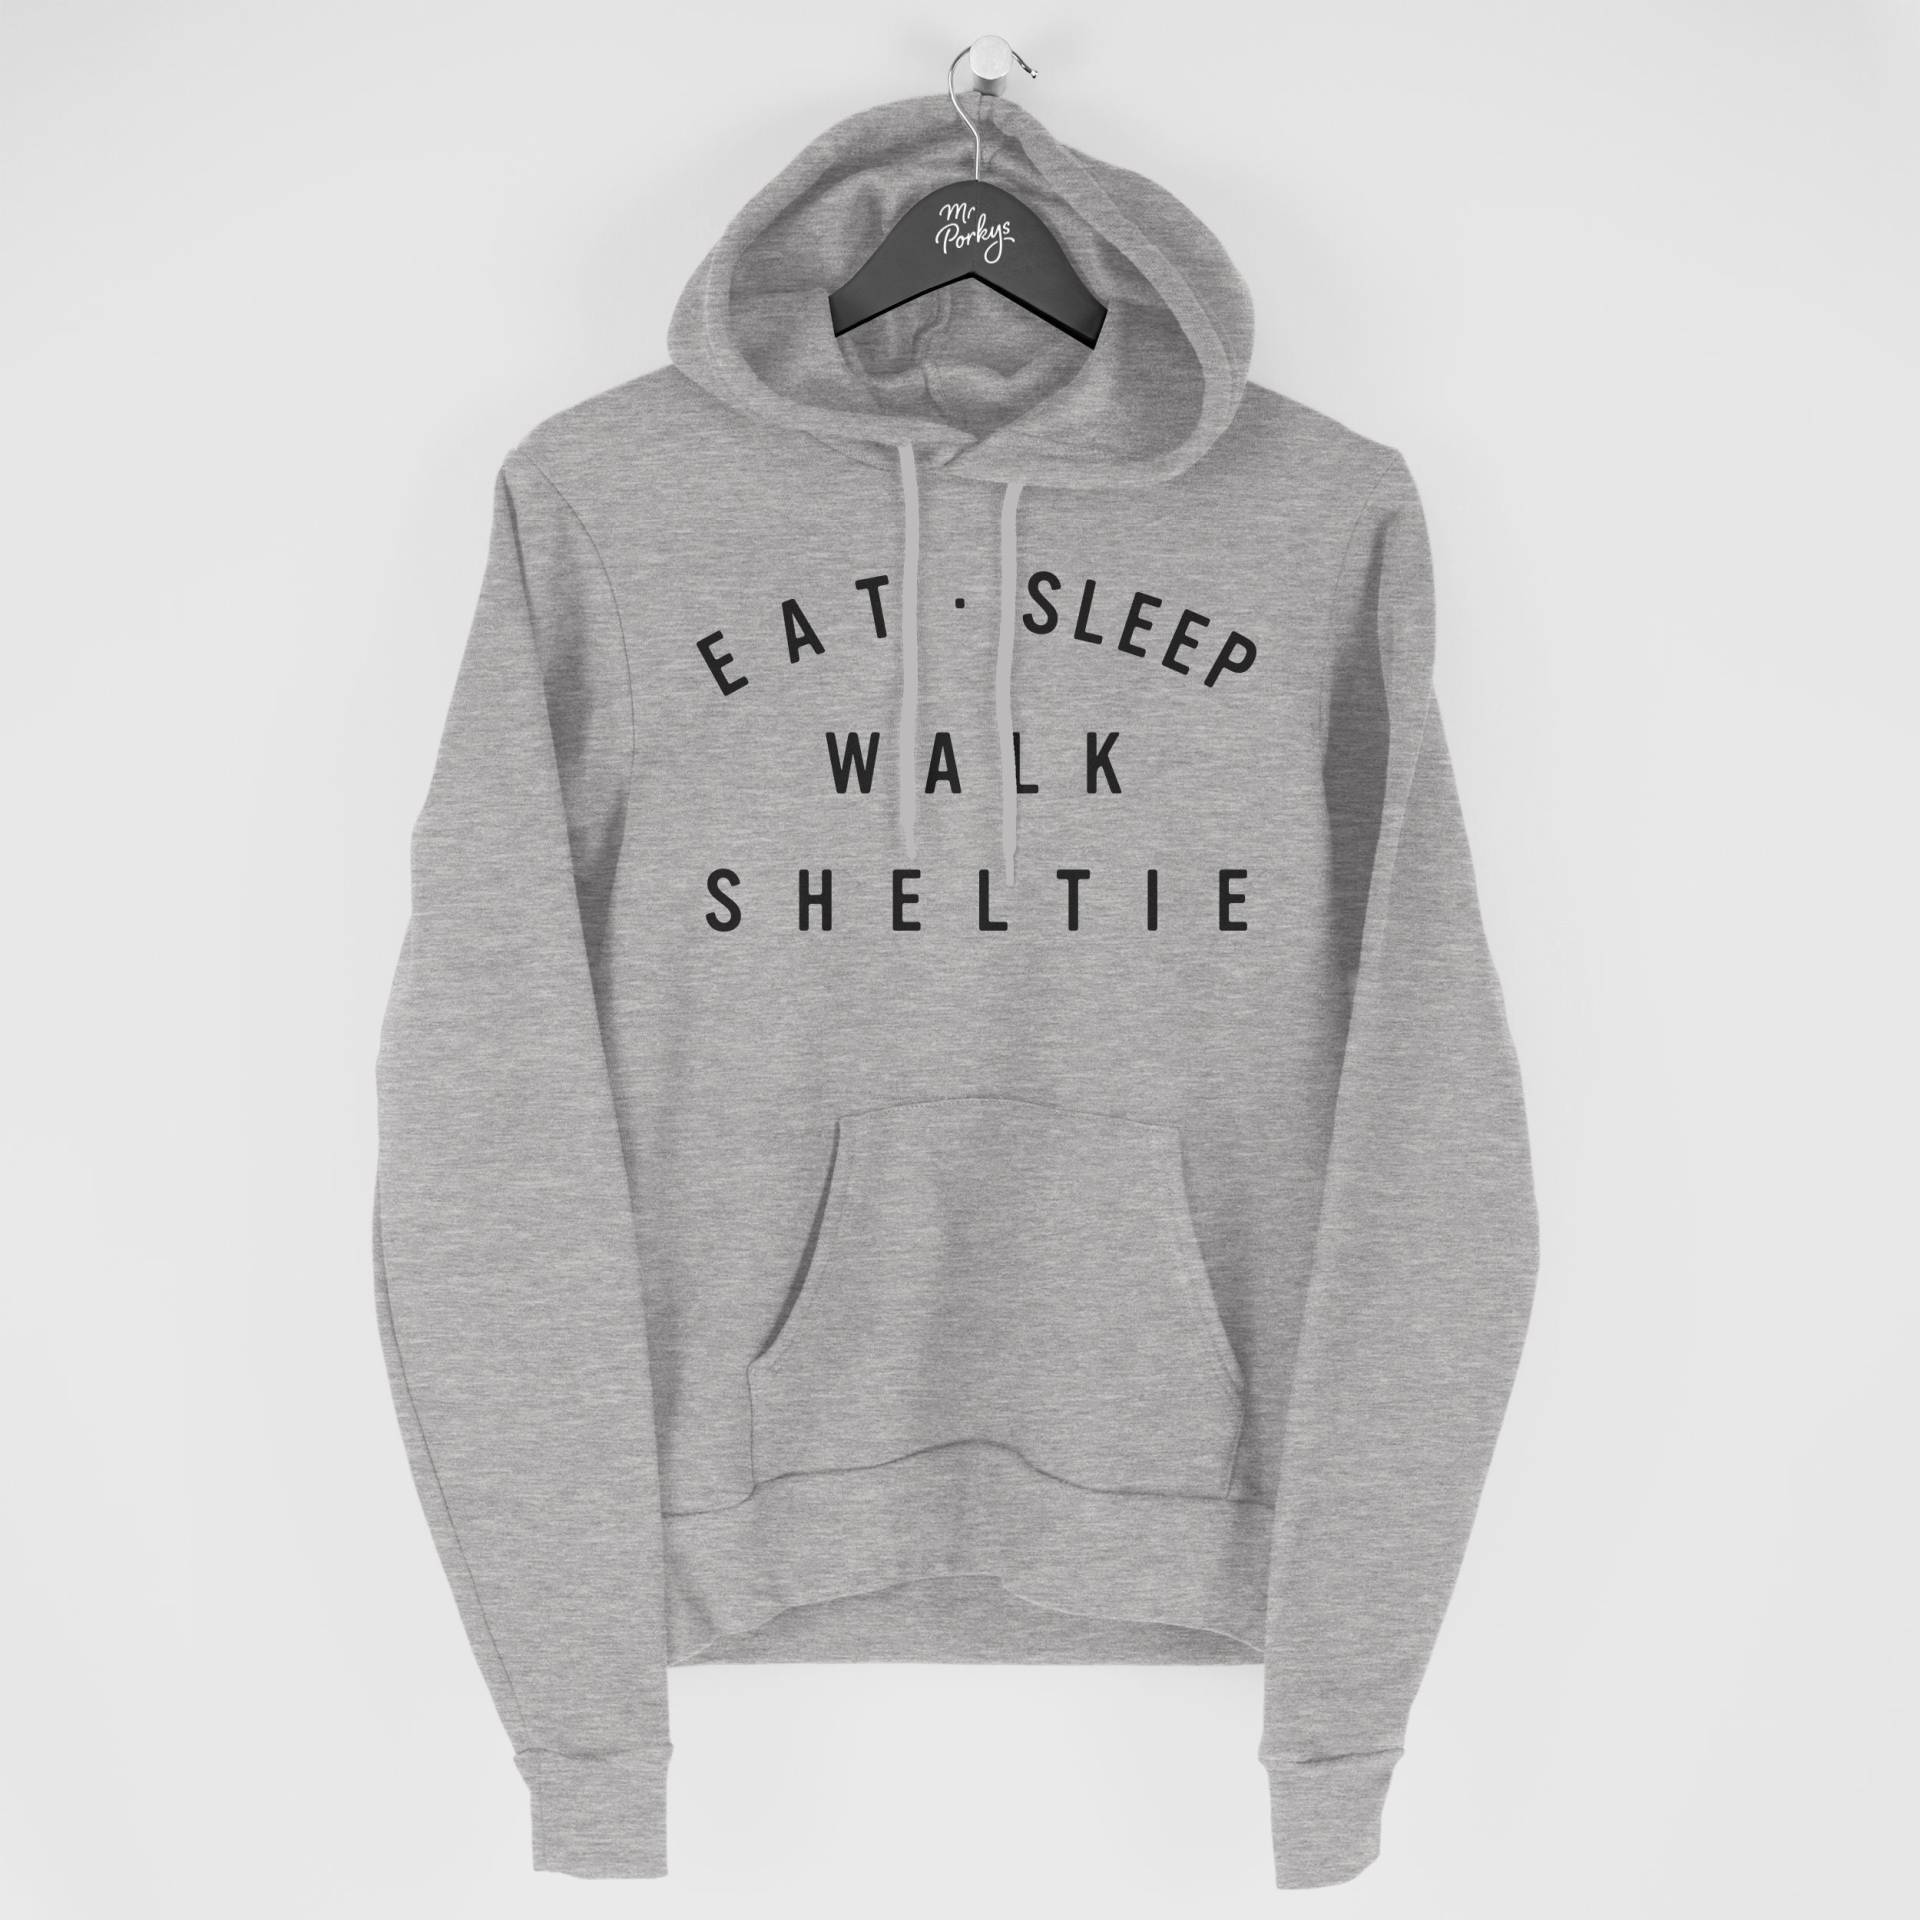 Sheltie Hoodie, Eat Sleep Walk Geschenk Für Besitzer, Hoody von MrPorkysGiftShop